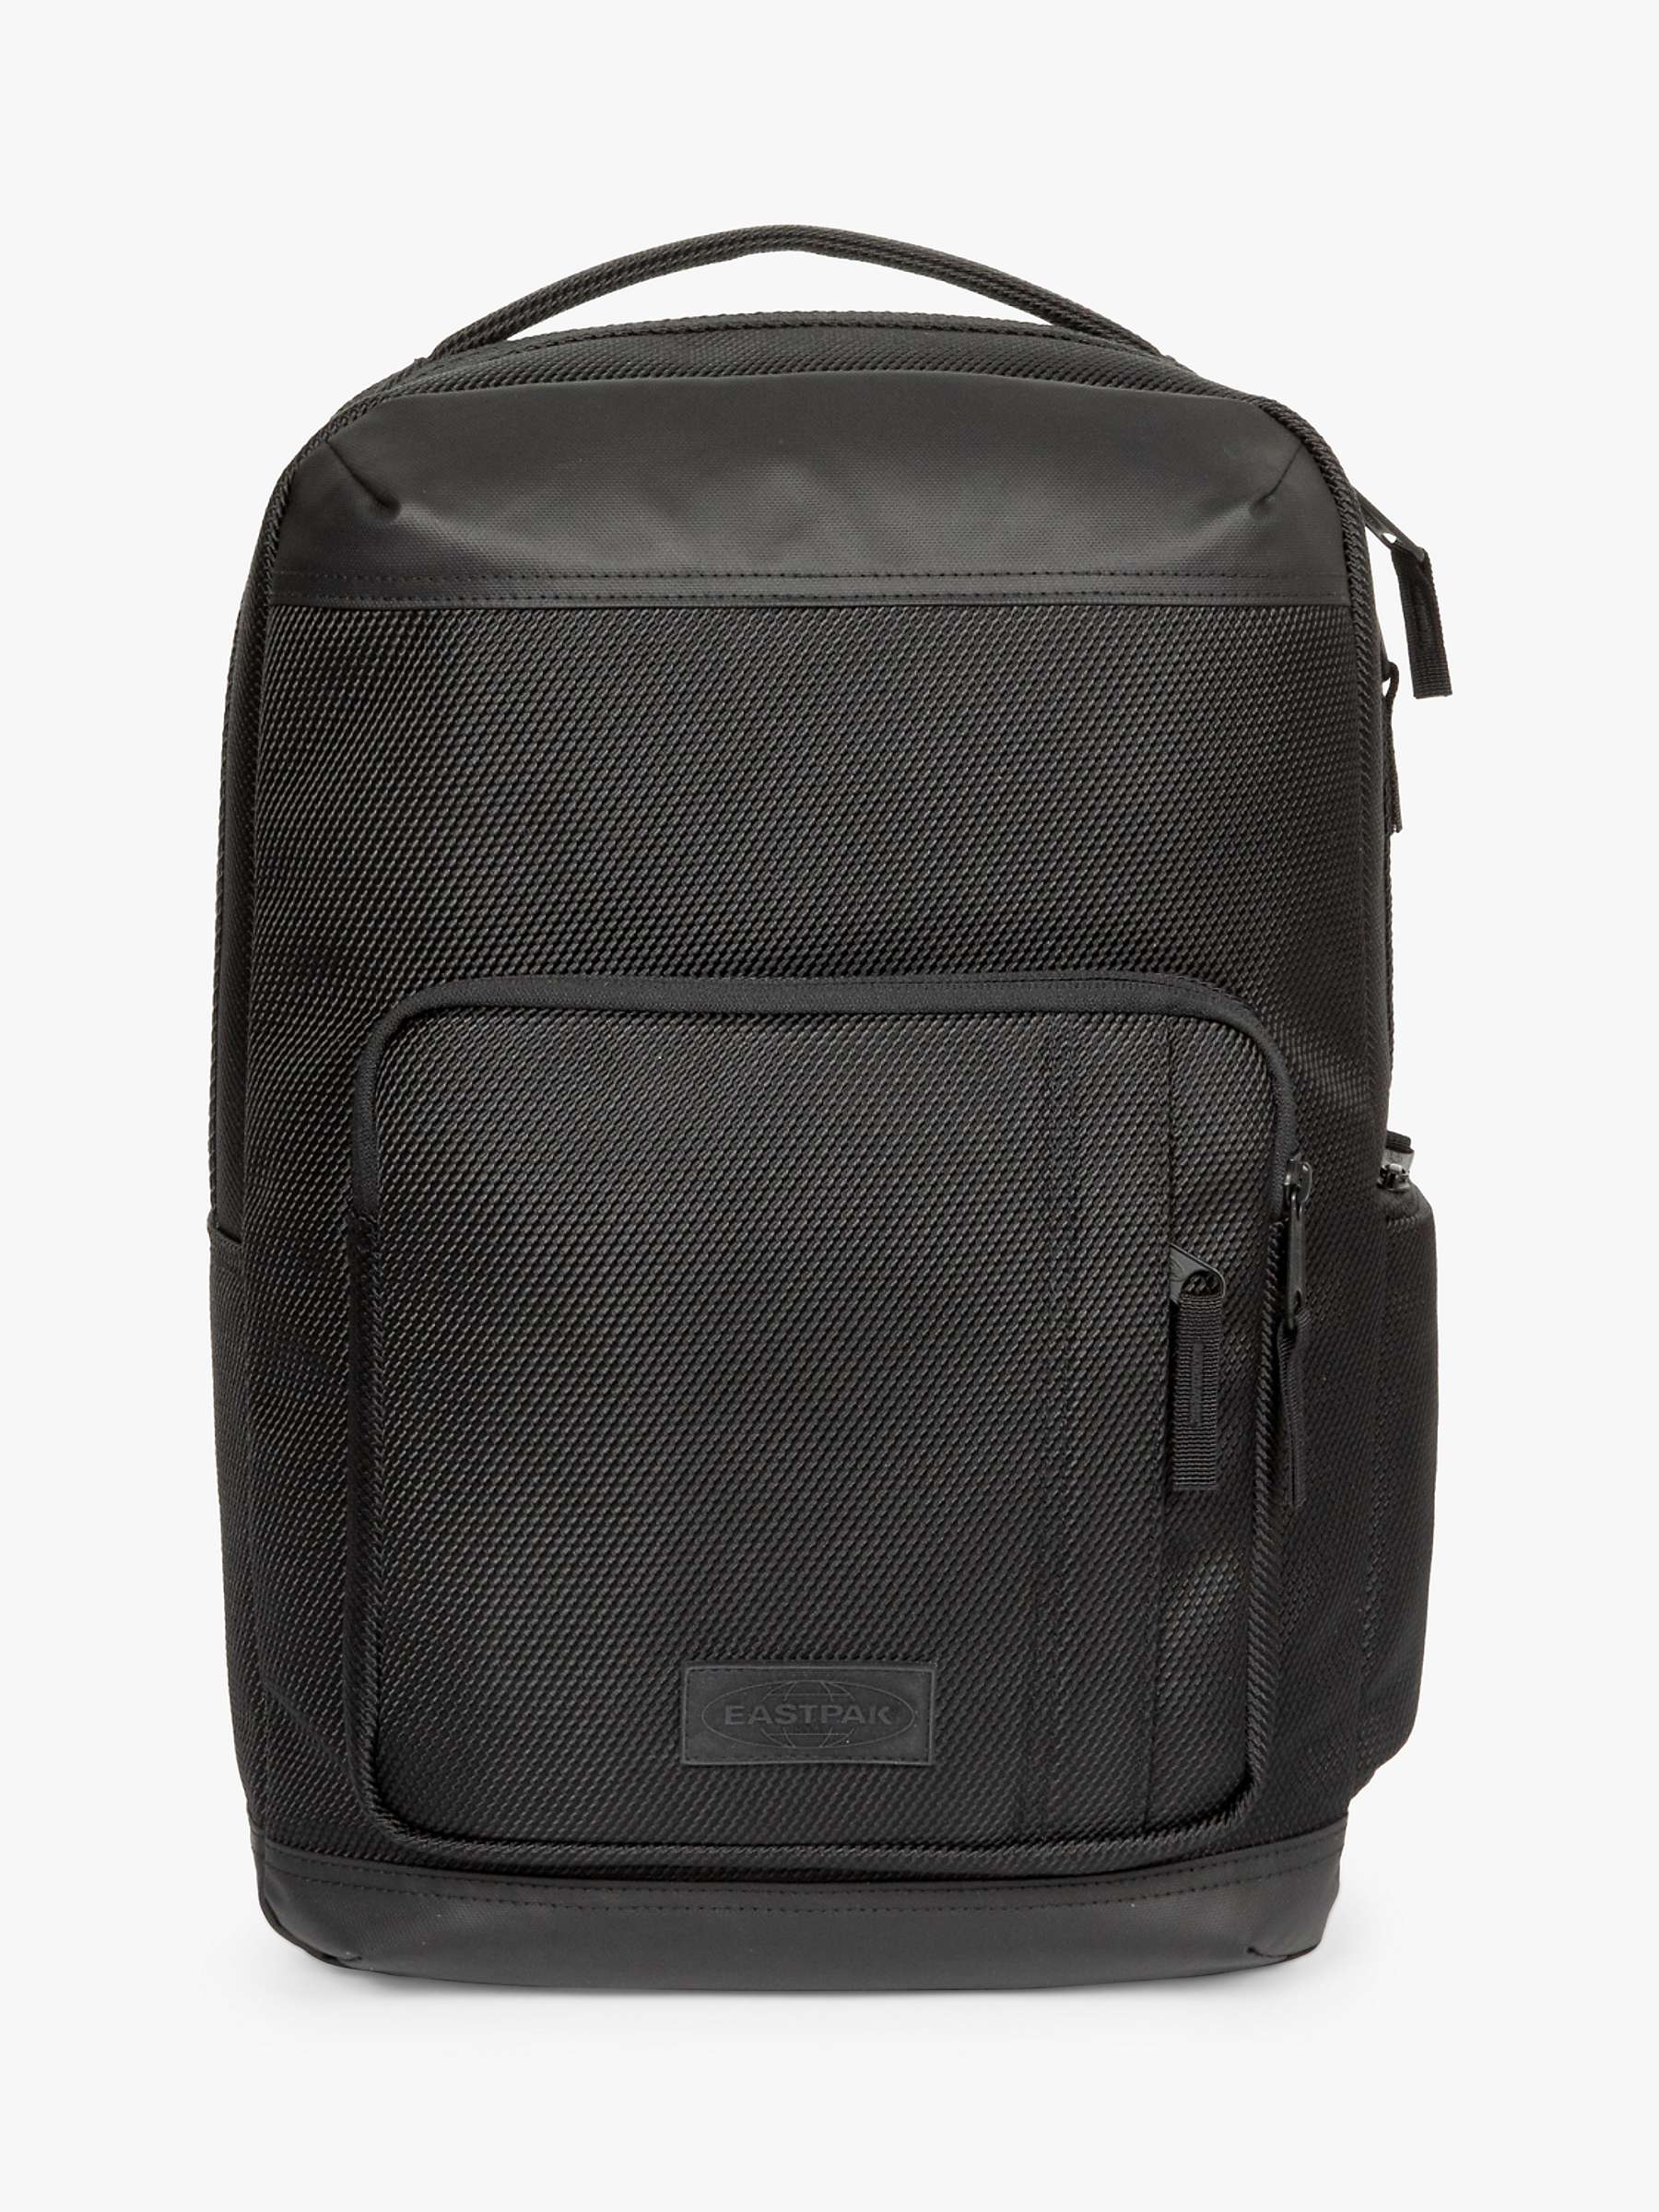 Buy Eastpak Lifestyle Backpack, Cnnct Coat Online at johnlewis.com